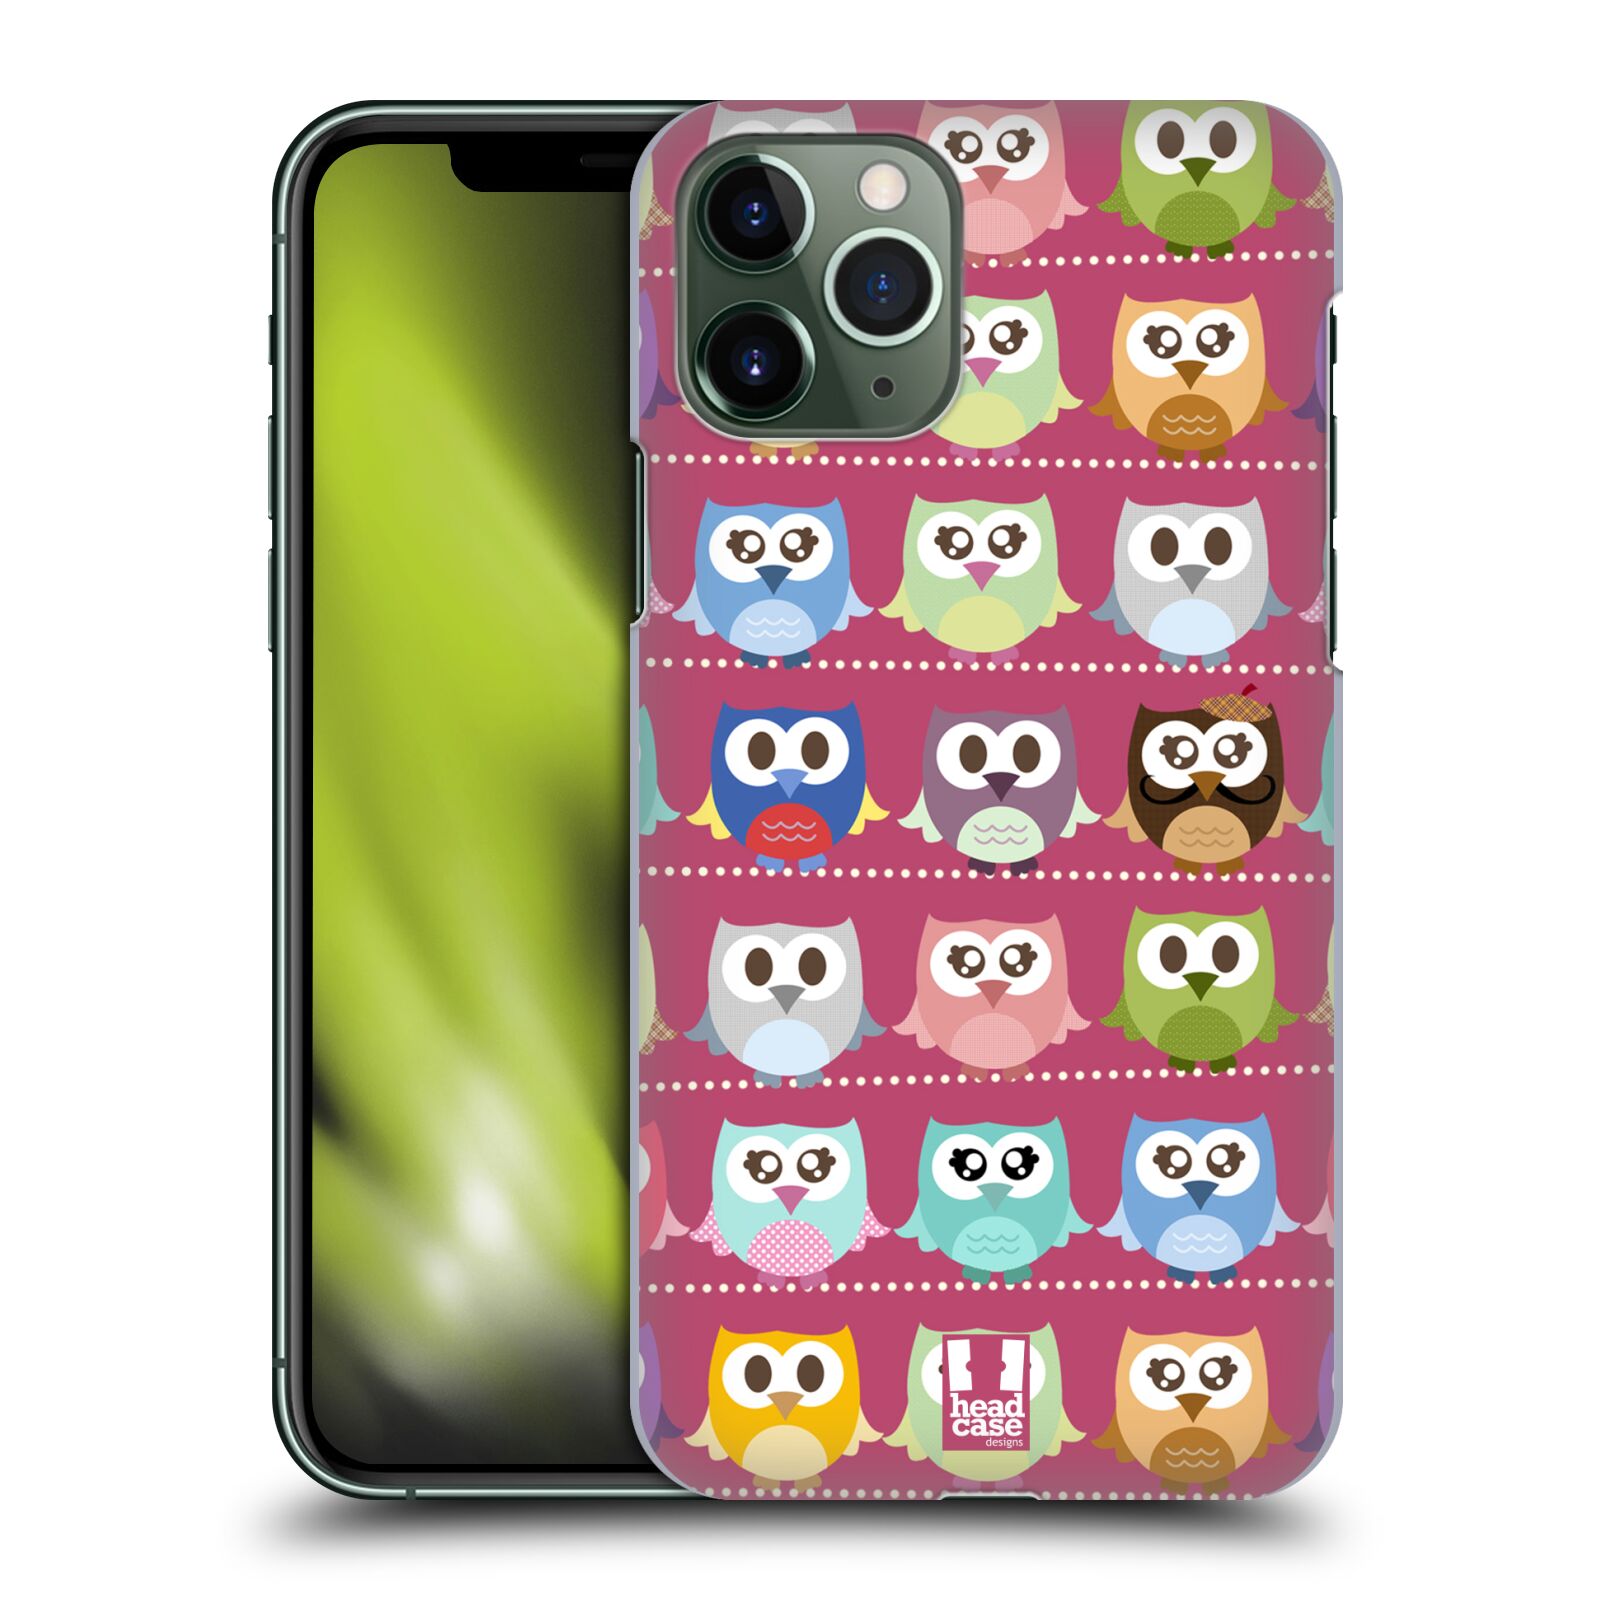 Pouzdro na mobil Apple Iphone 11 PRO - HEAD CASE - vzor Roztomilá sovička růžové sovičky